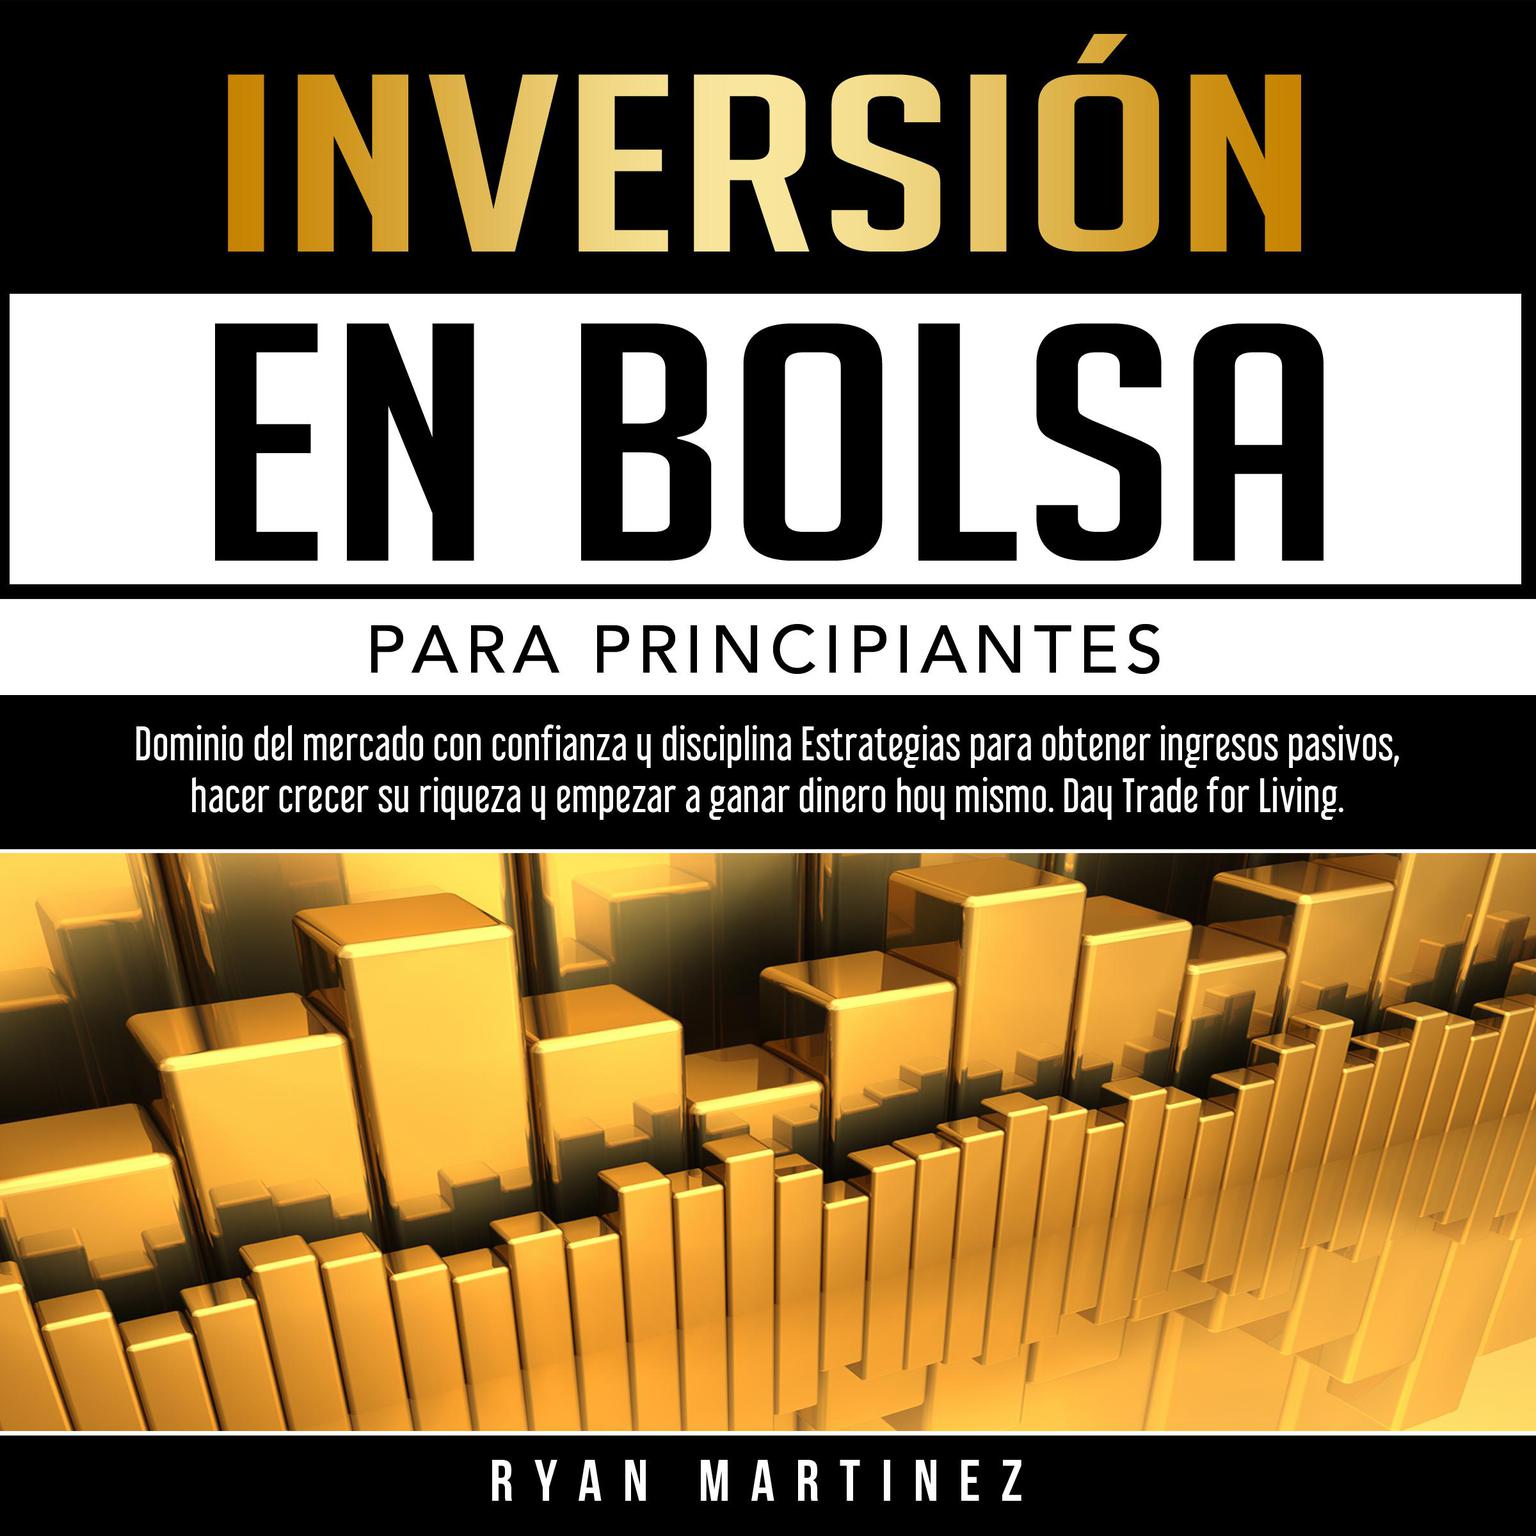 Inversión en bolsa para principiantes (Abridged) Audiobook, by Ryan Martinez